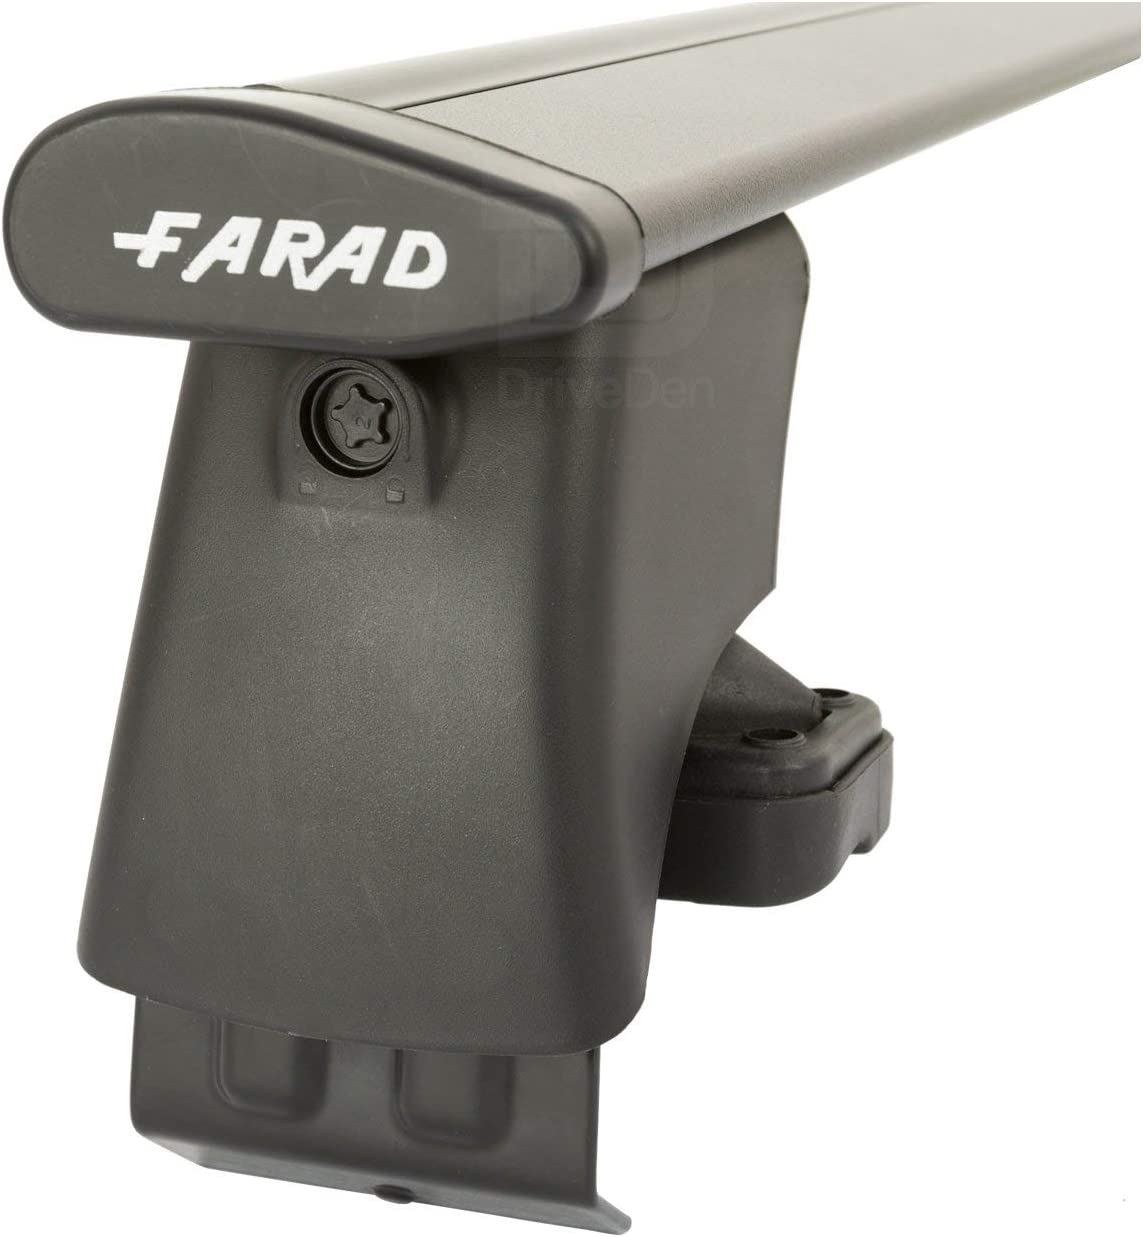 FARAD-Kit H2 per barre portatutto - Fiat Freemont 2011> (senza corrimano)